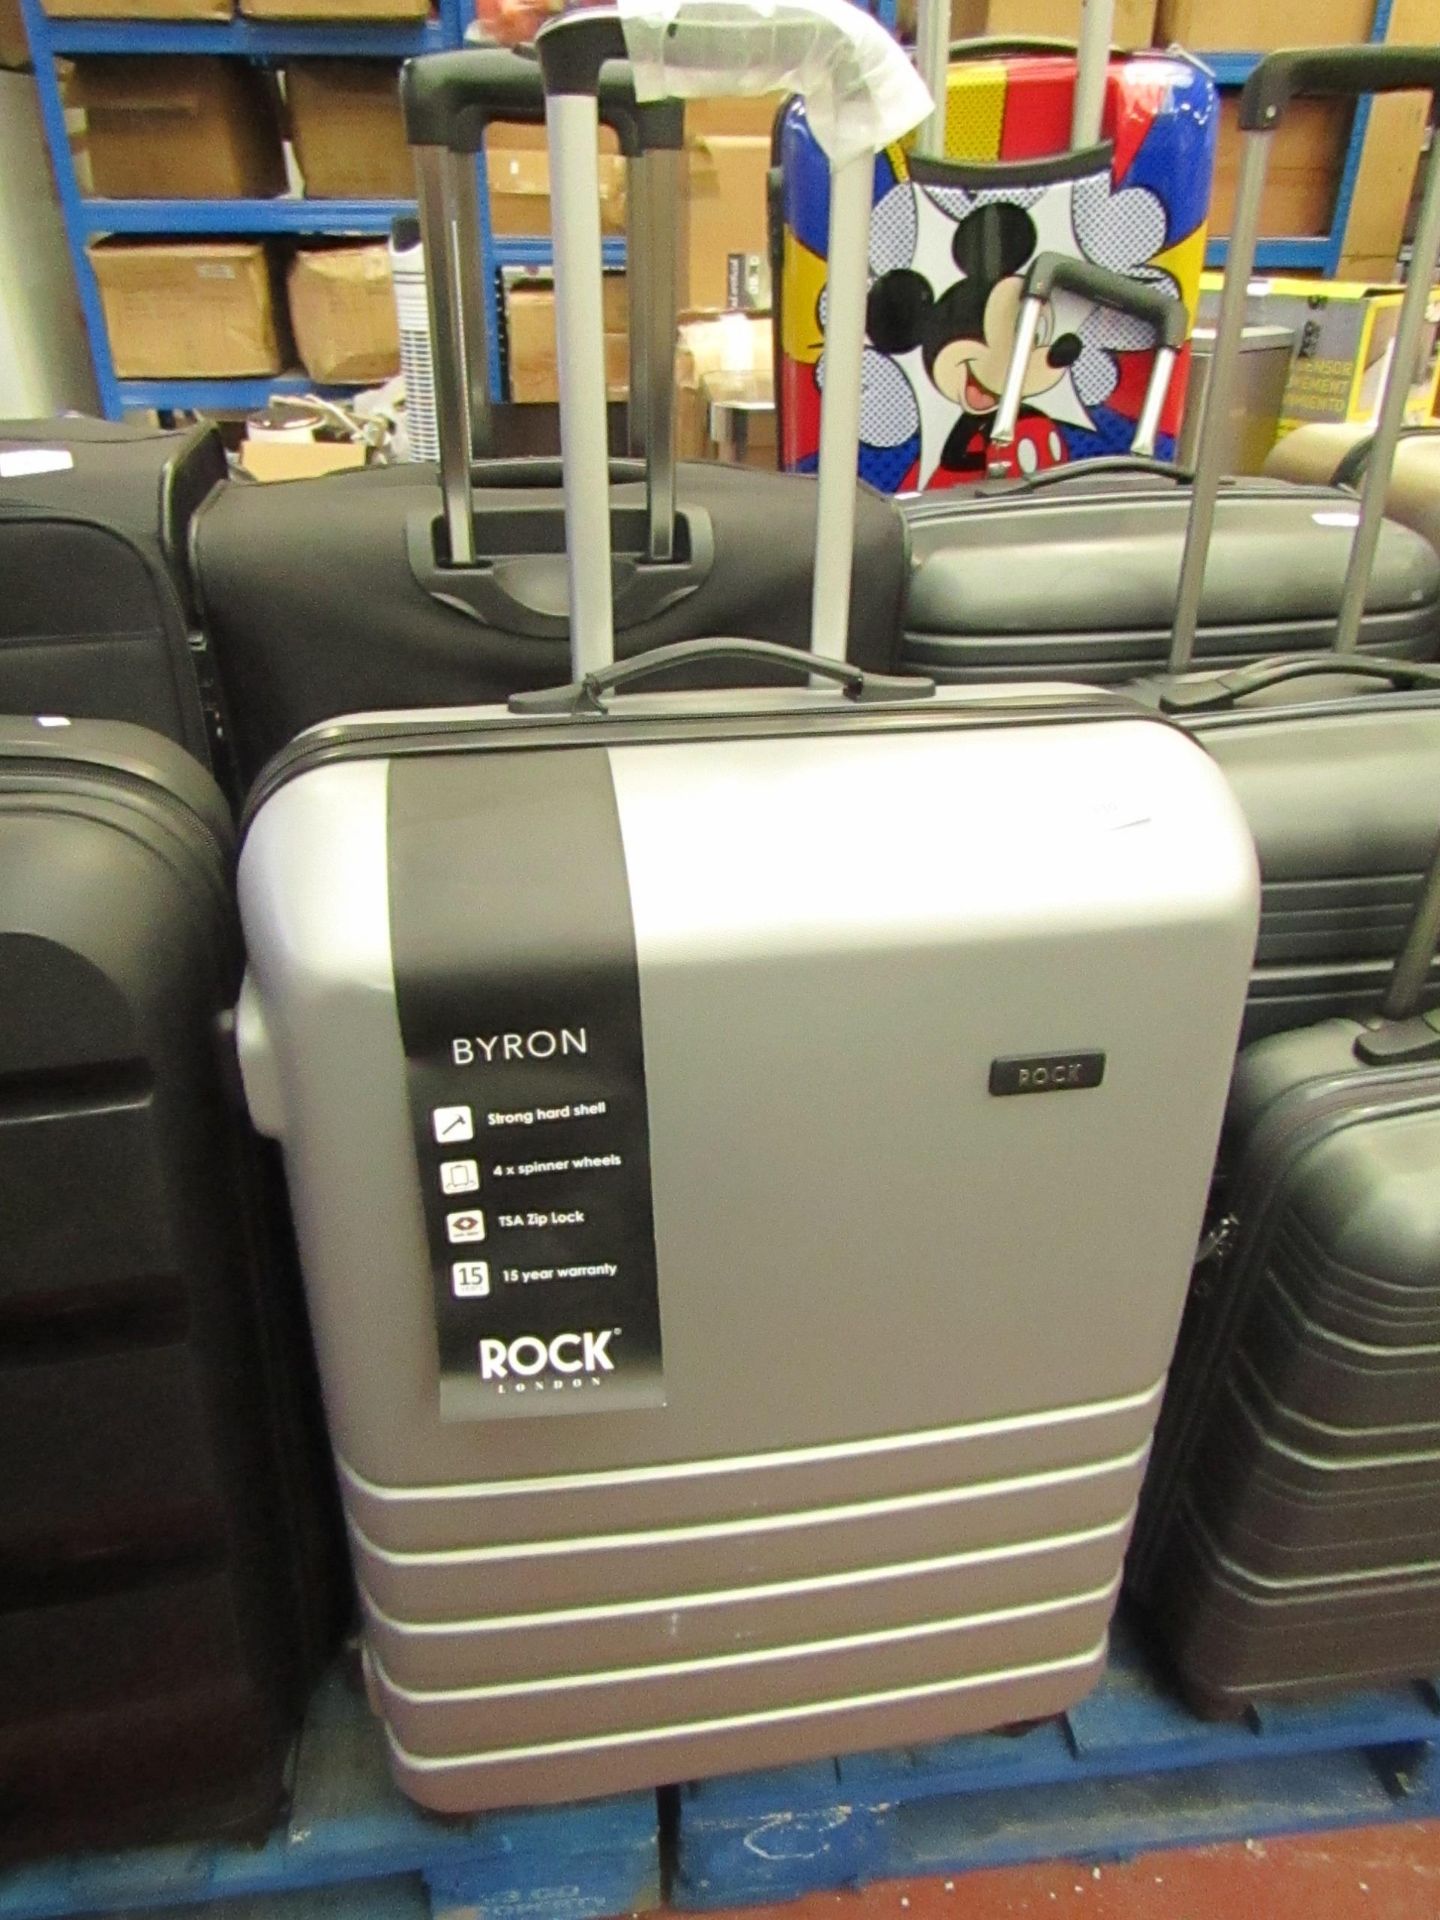 Rock Byron large suitcase.